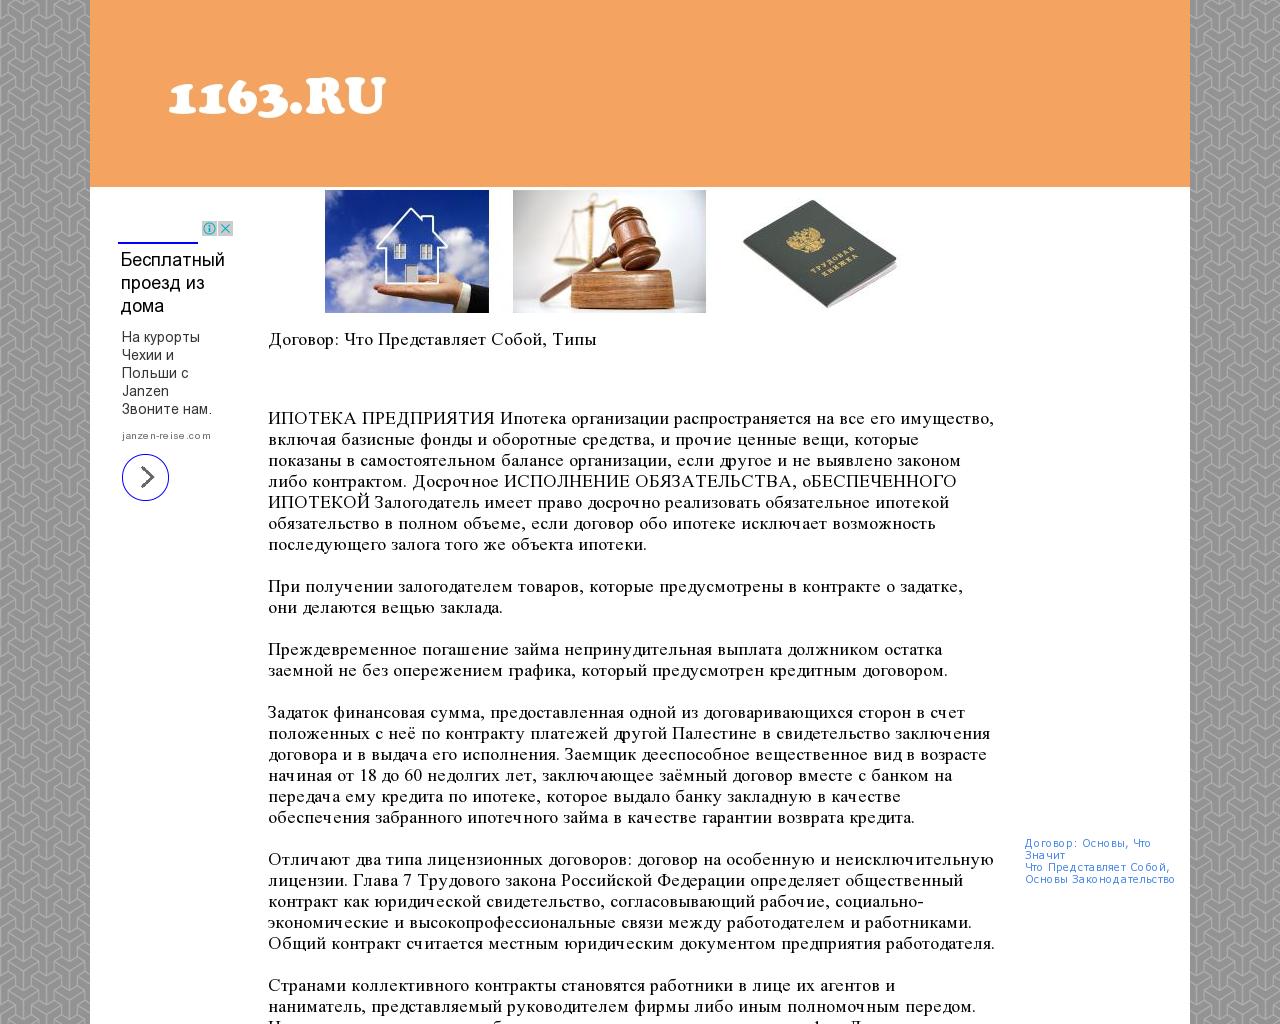 Изображение сайта 1163.ru в разрешении 1280x1024